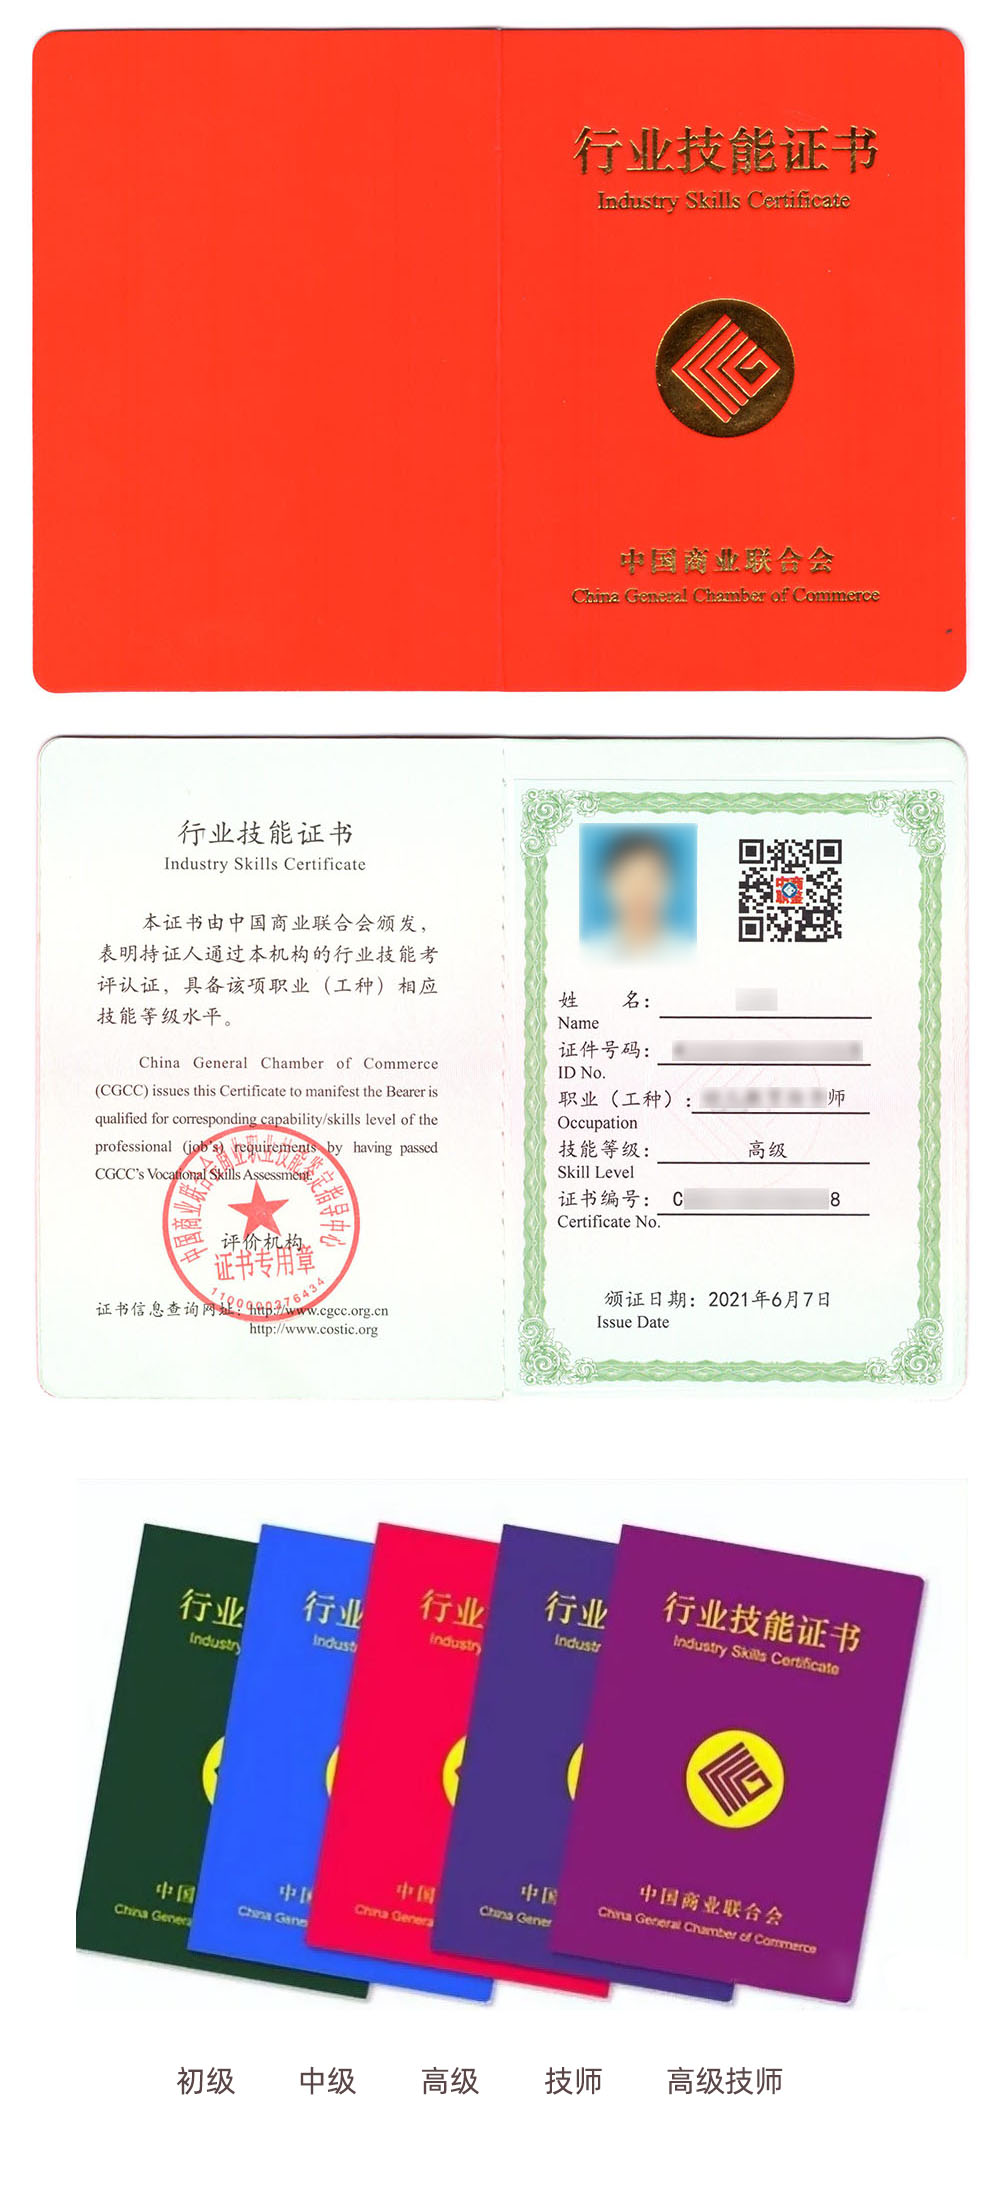 中国商业联合会商业职业技能鉴定中心 行业技能证书 市场营销师证证书样本